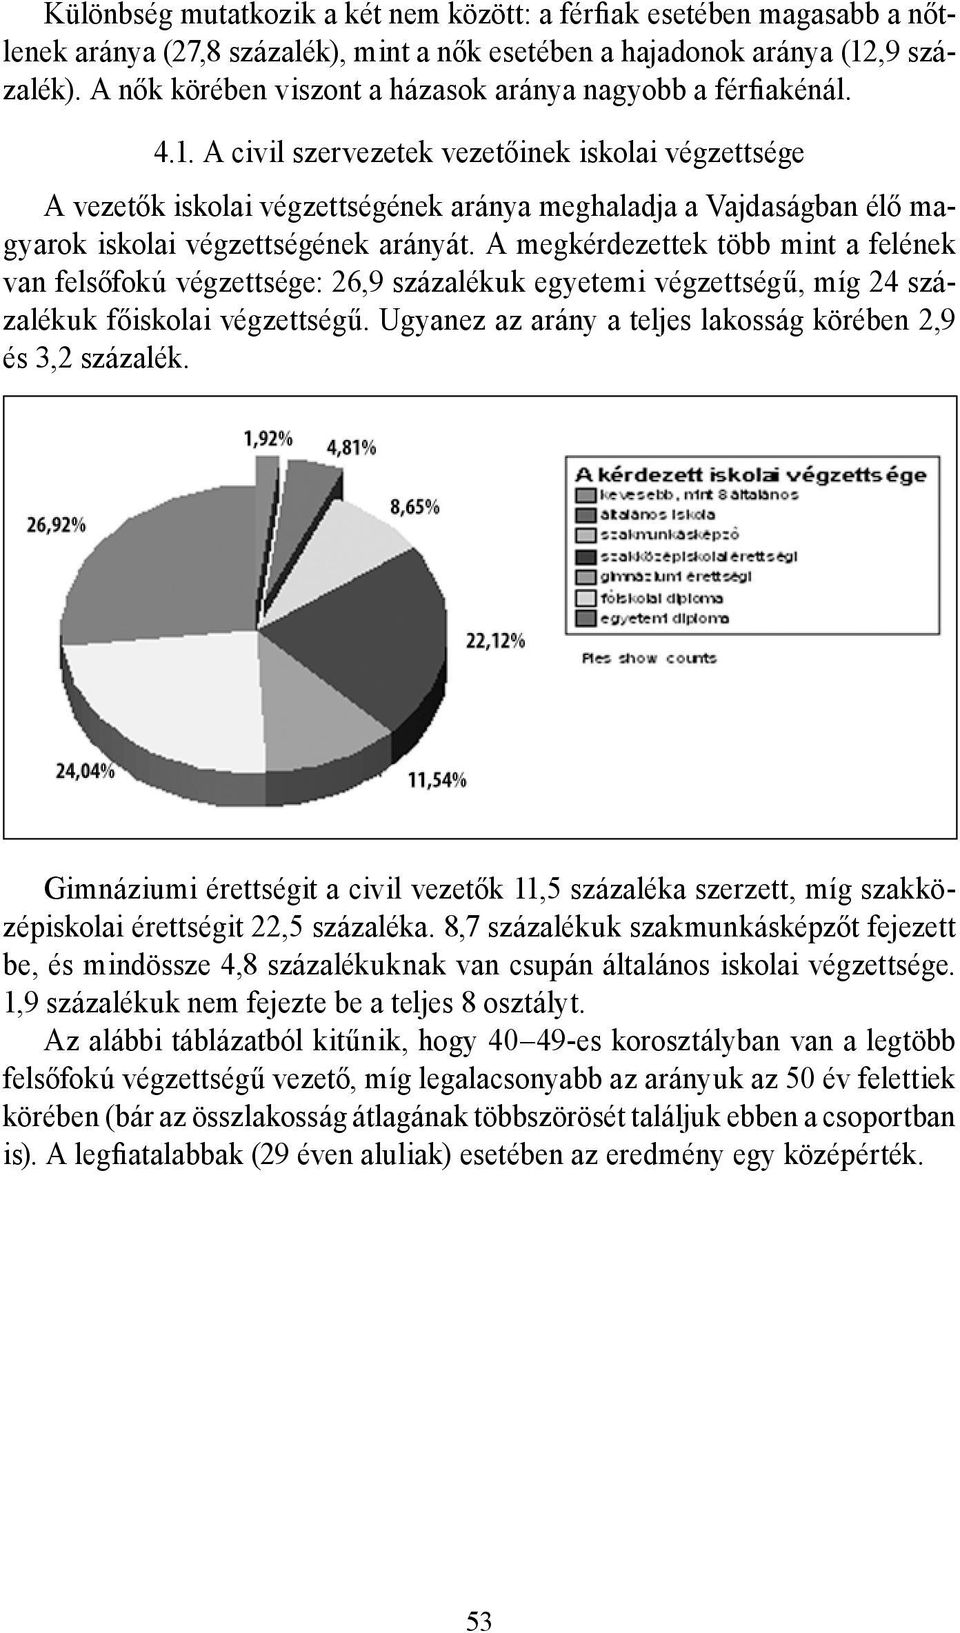 A civil szervezetek vezetőinek iskolai végzettsége A vezetők iskolai végzettségének aránya meghaladja a Vajdaságban élő magyarok iskolai végzettségének arányát.